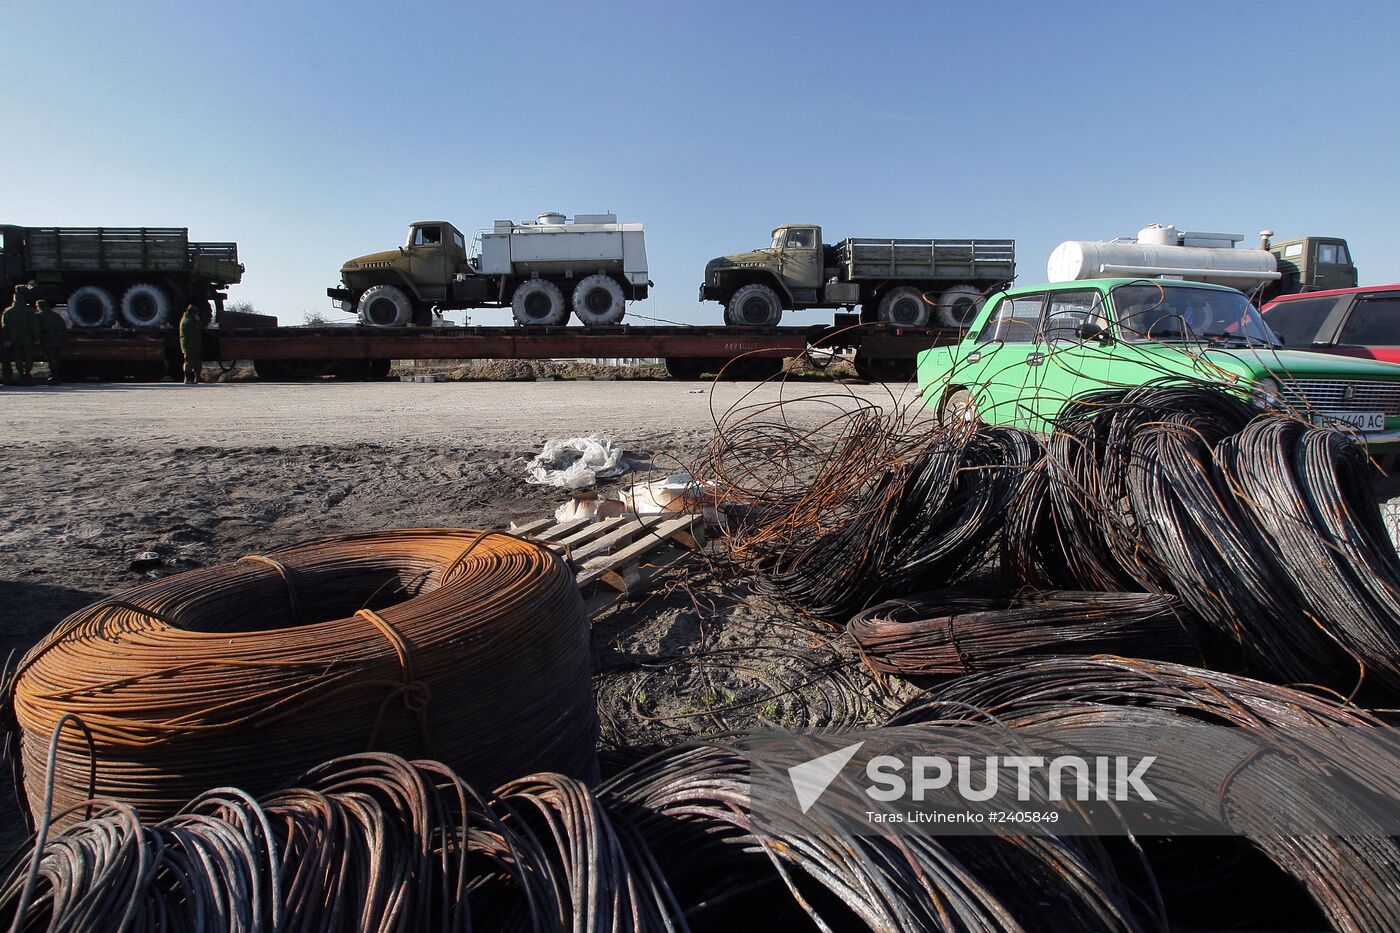 Military machinery prepared for shipment to Ukraine